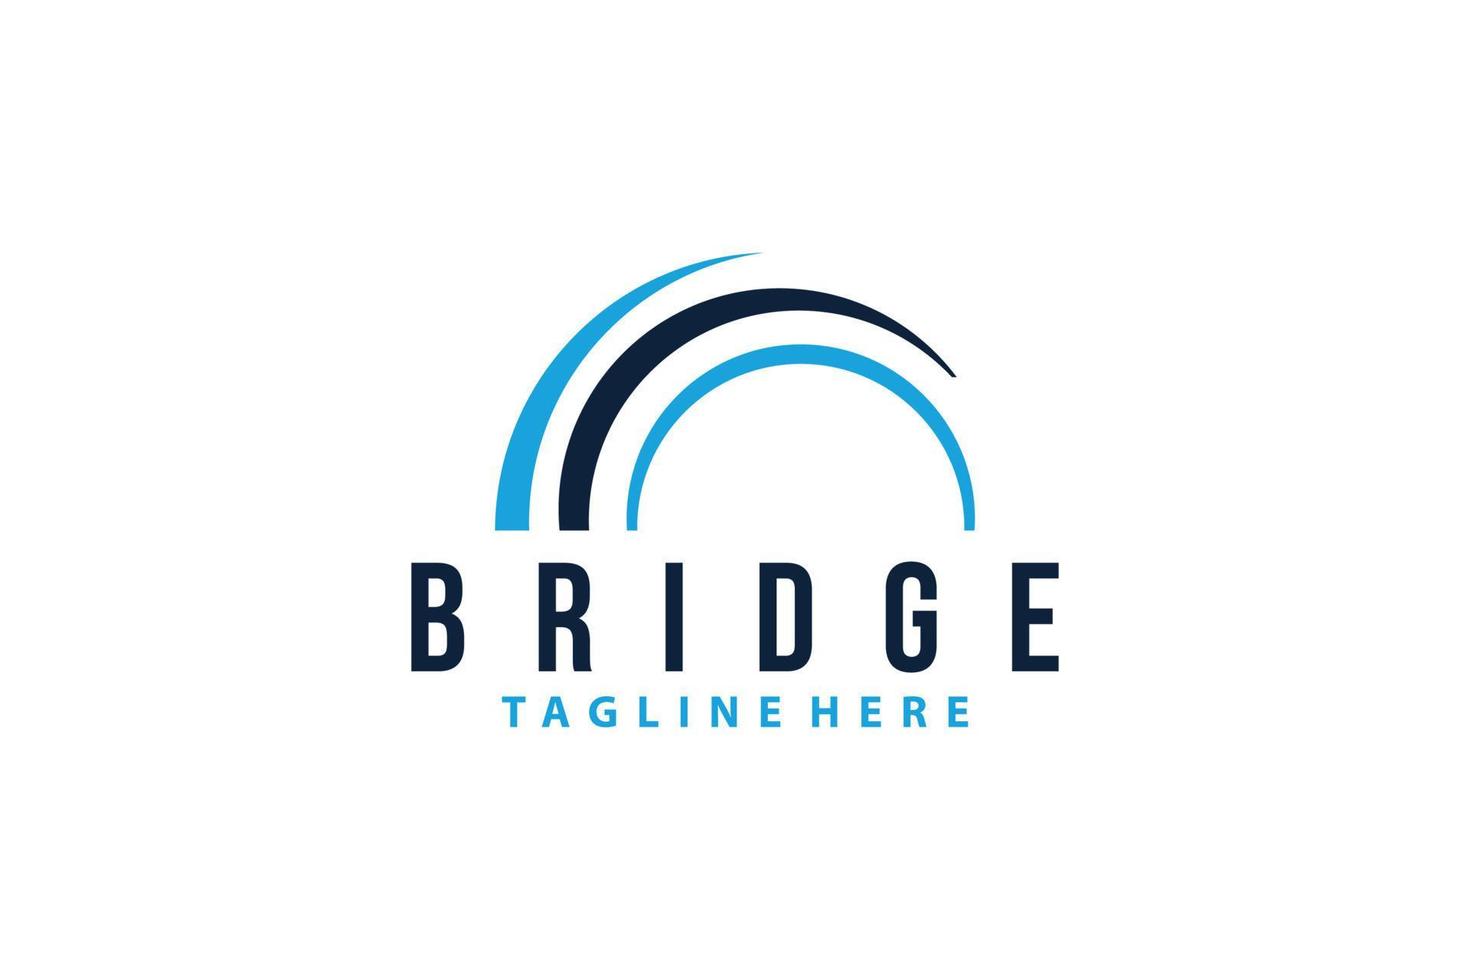 bridge logo icon vector isolated